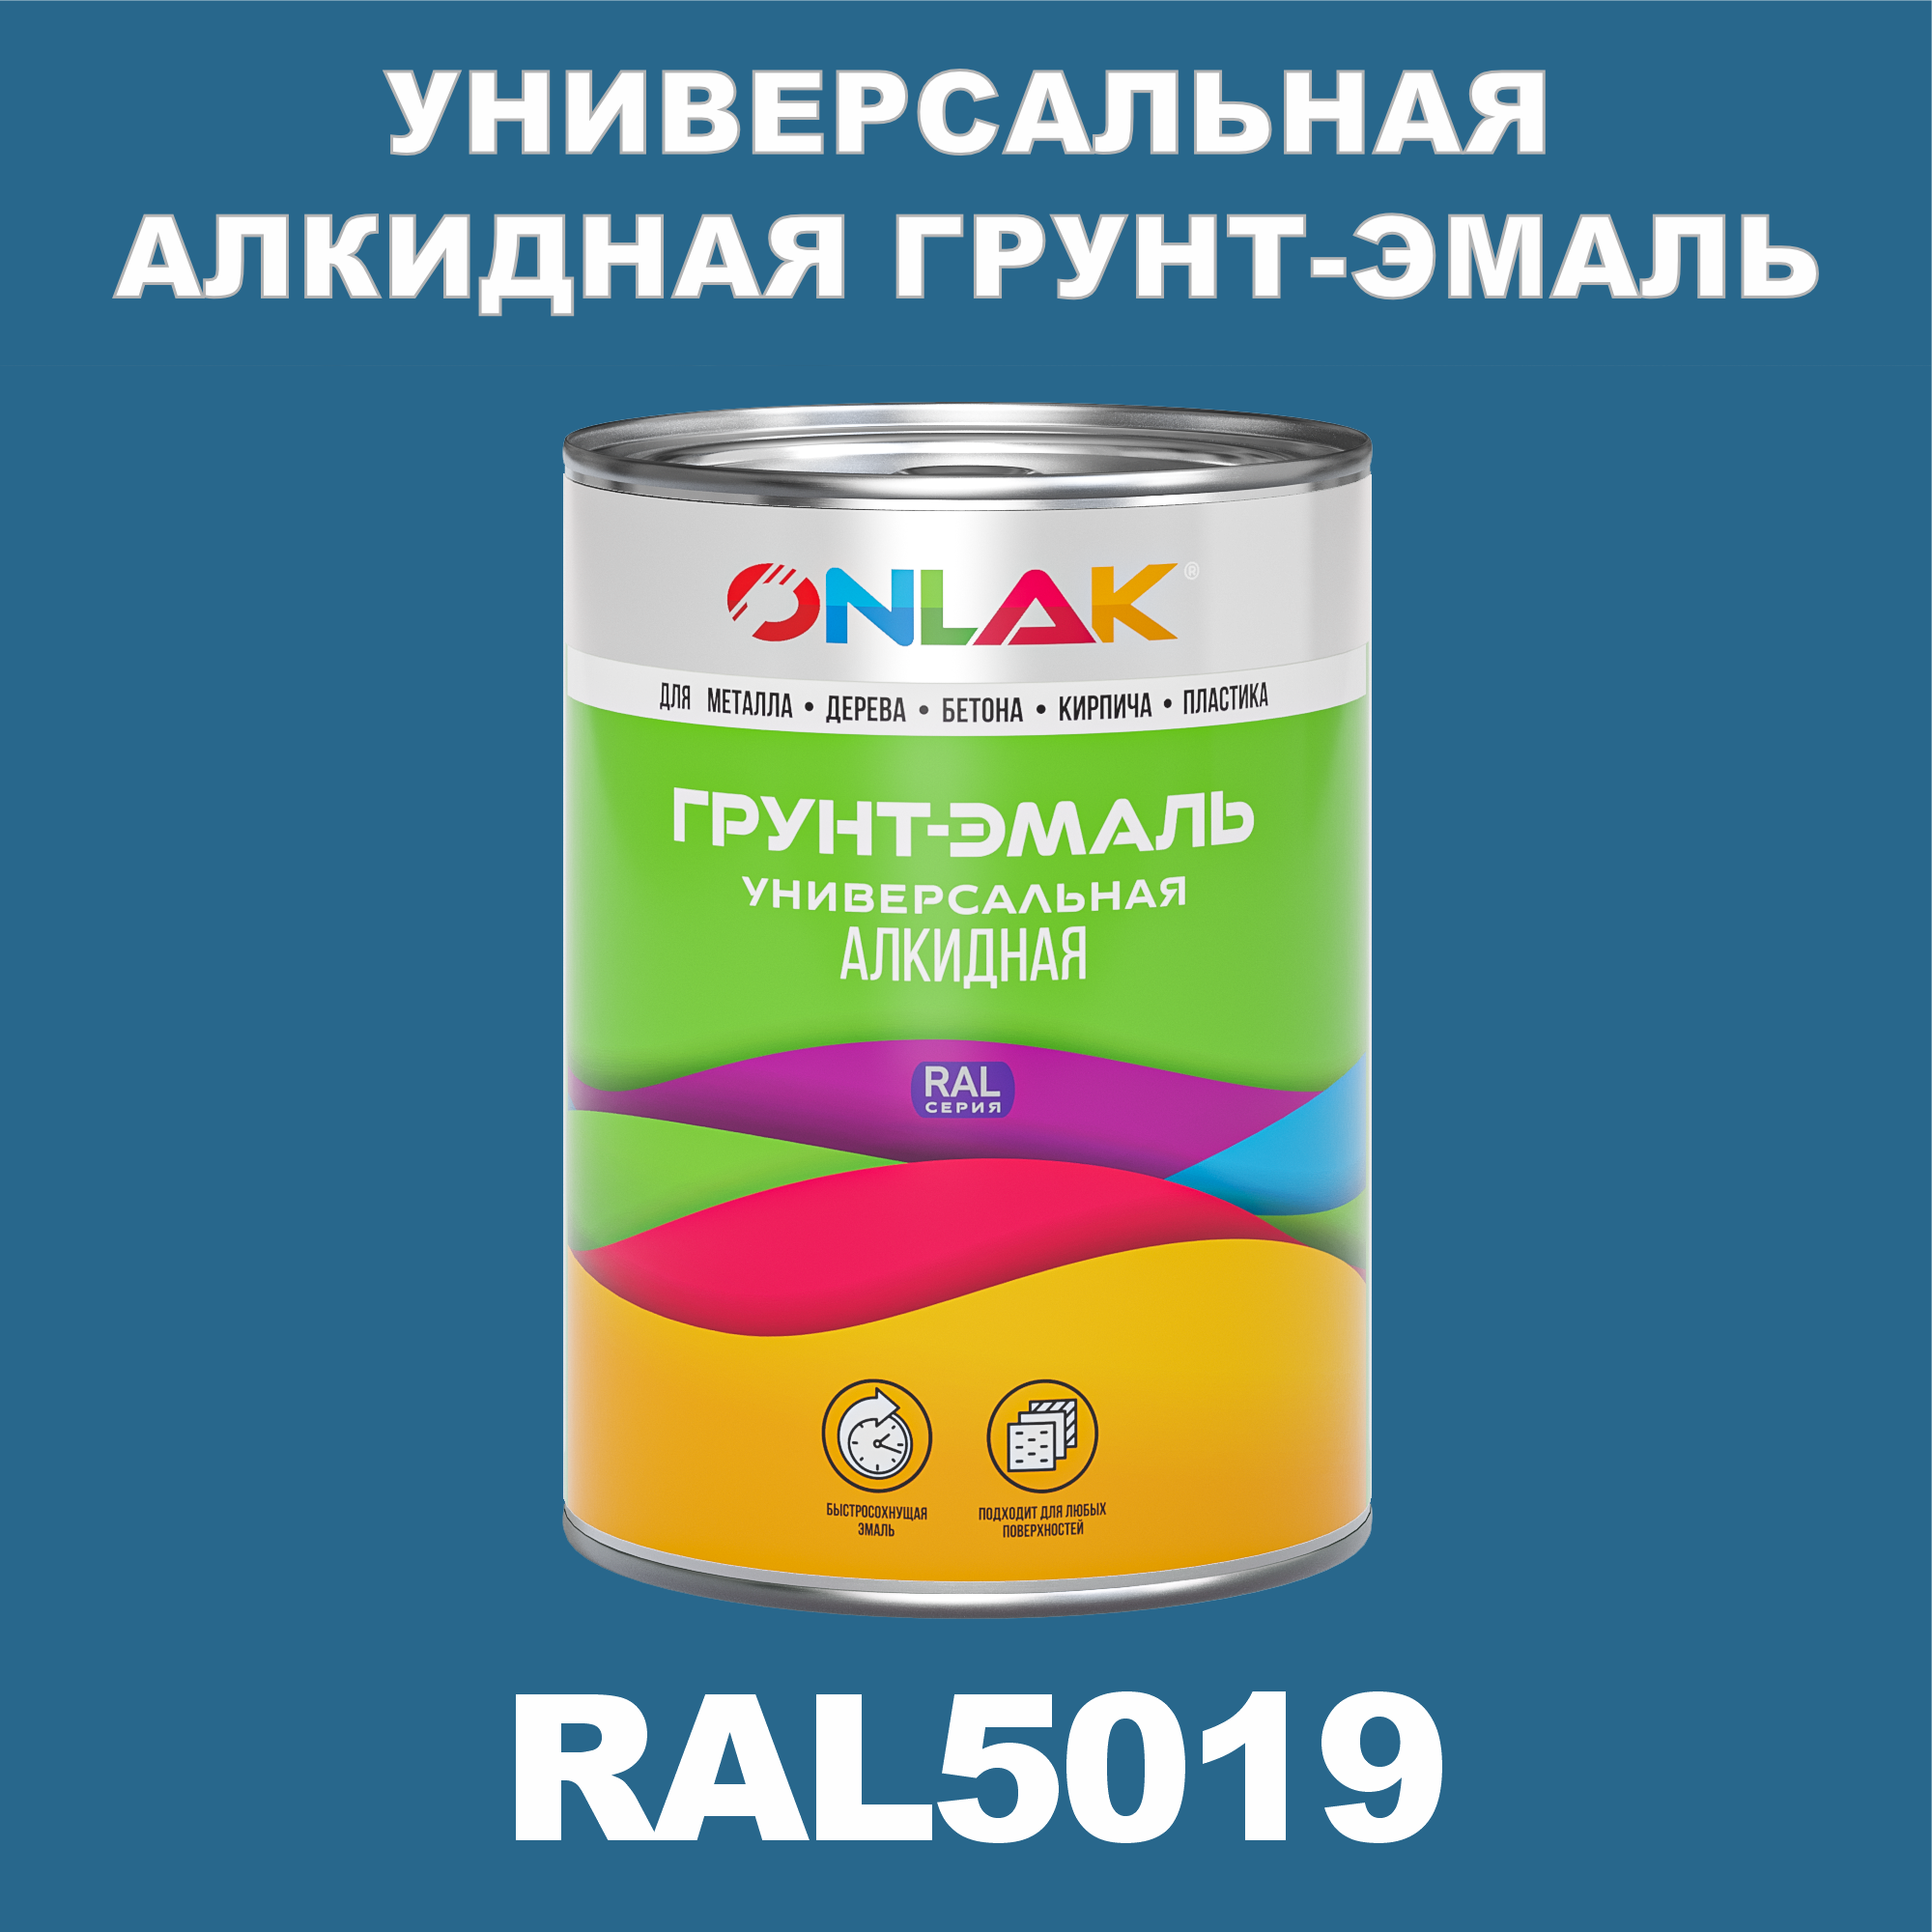 Грунт-эмаль ONLAK 1К RAL5019 антикоррозионная алкидная по металлу по ржавчине 1 кг грунт эмаль yollo по ржавчине алкидная серая 0 9 кг